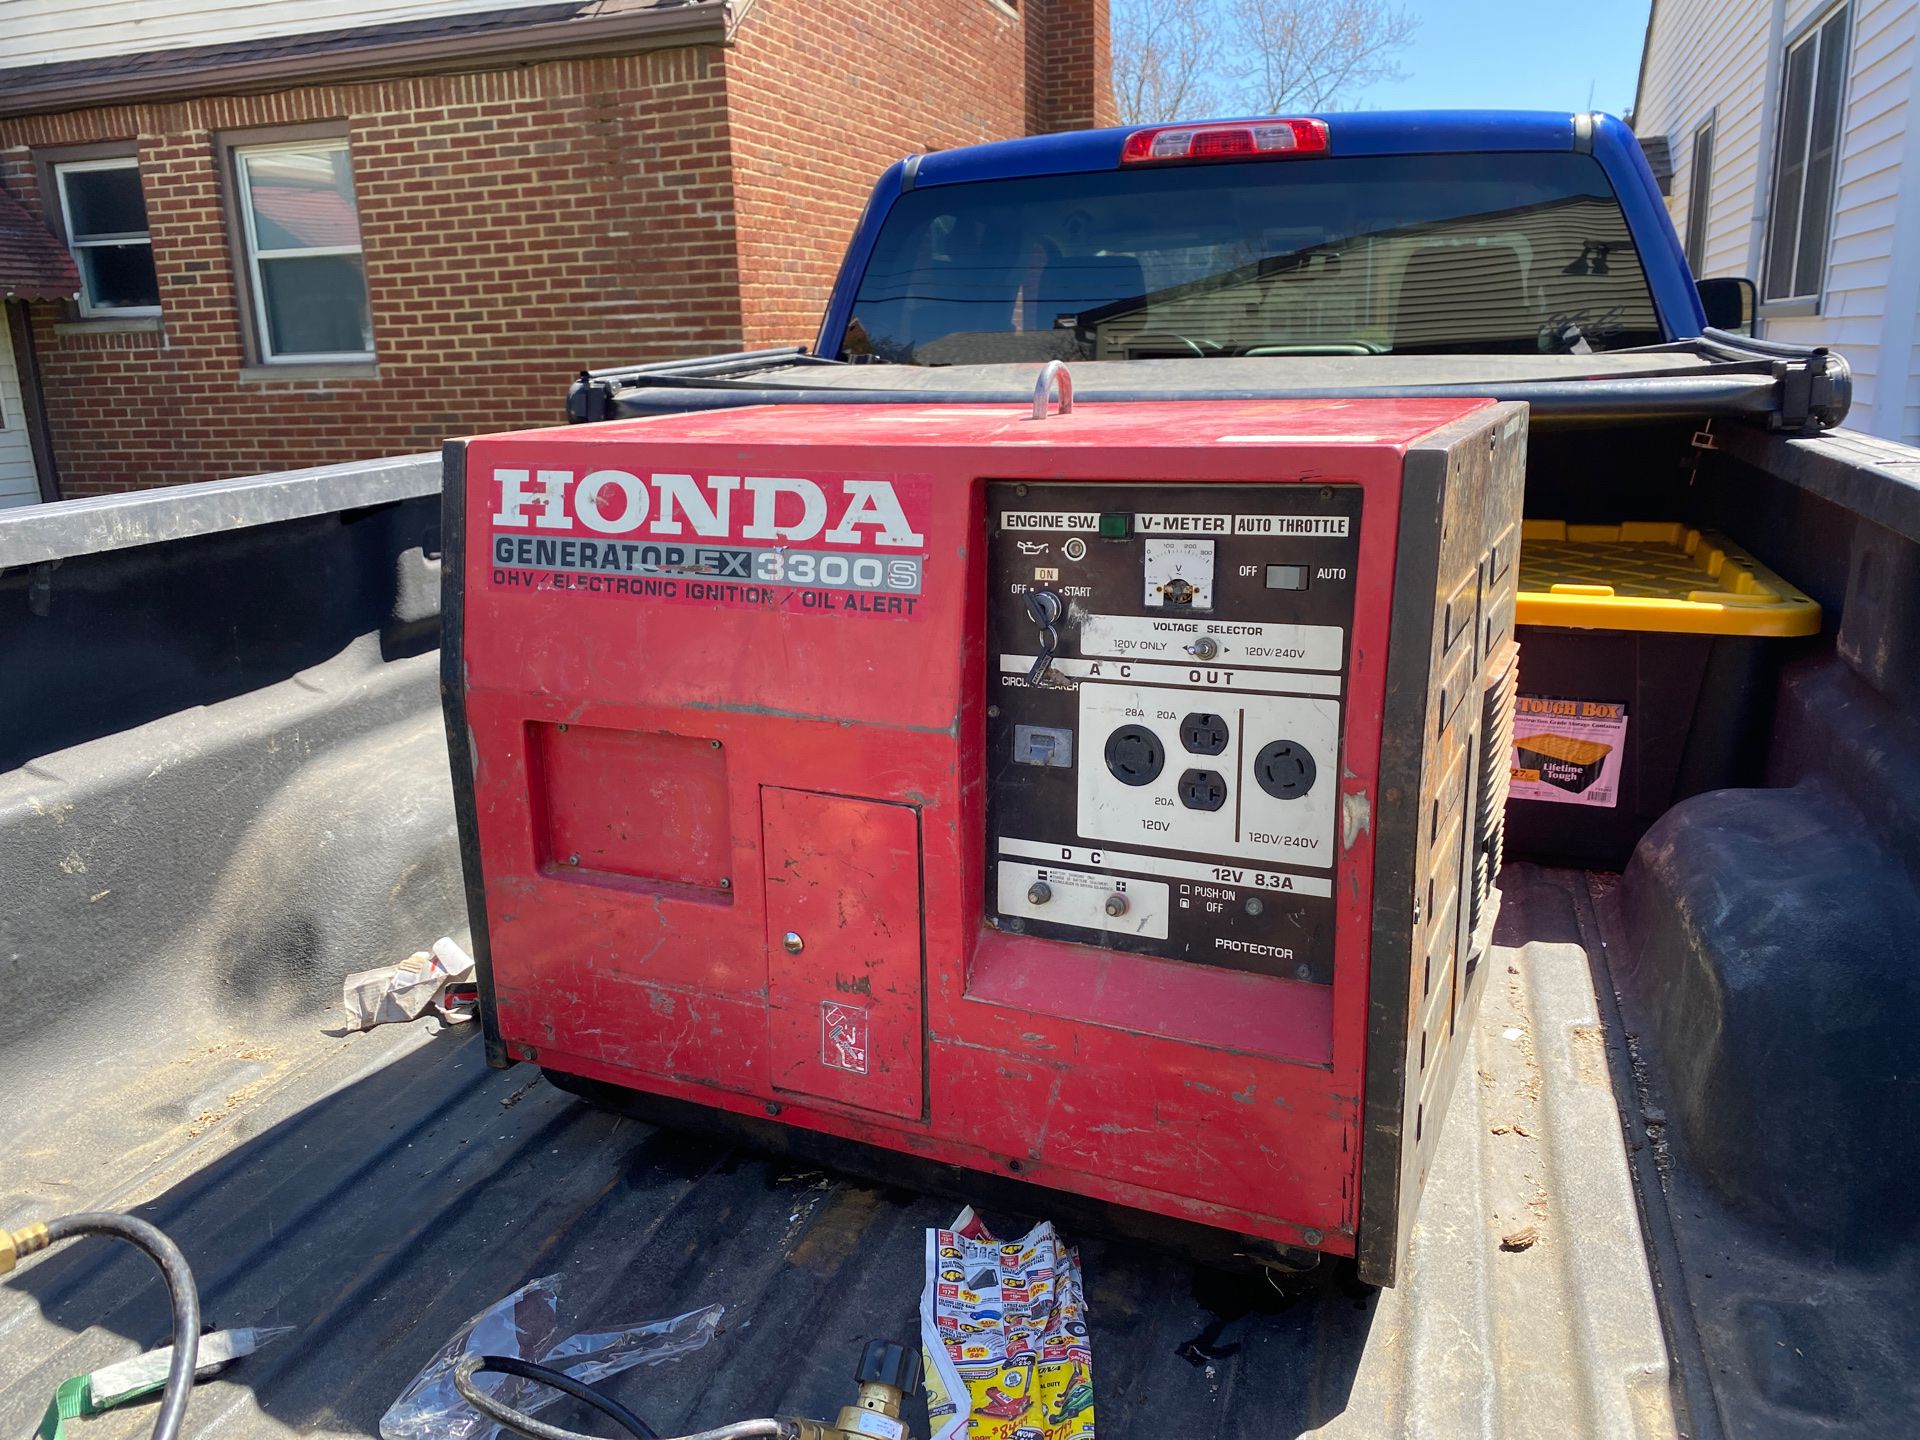 Honda generator ex330s